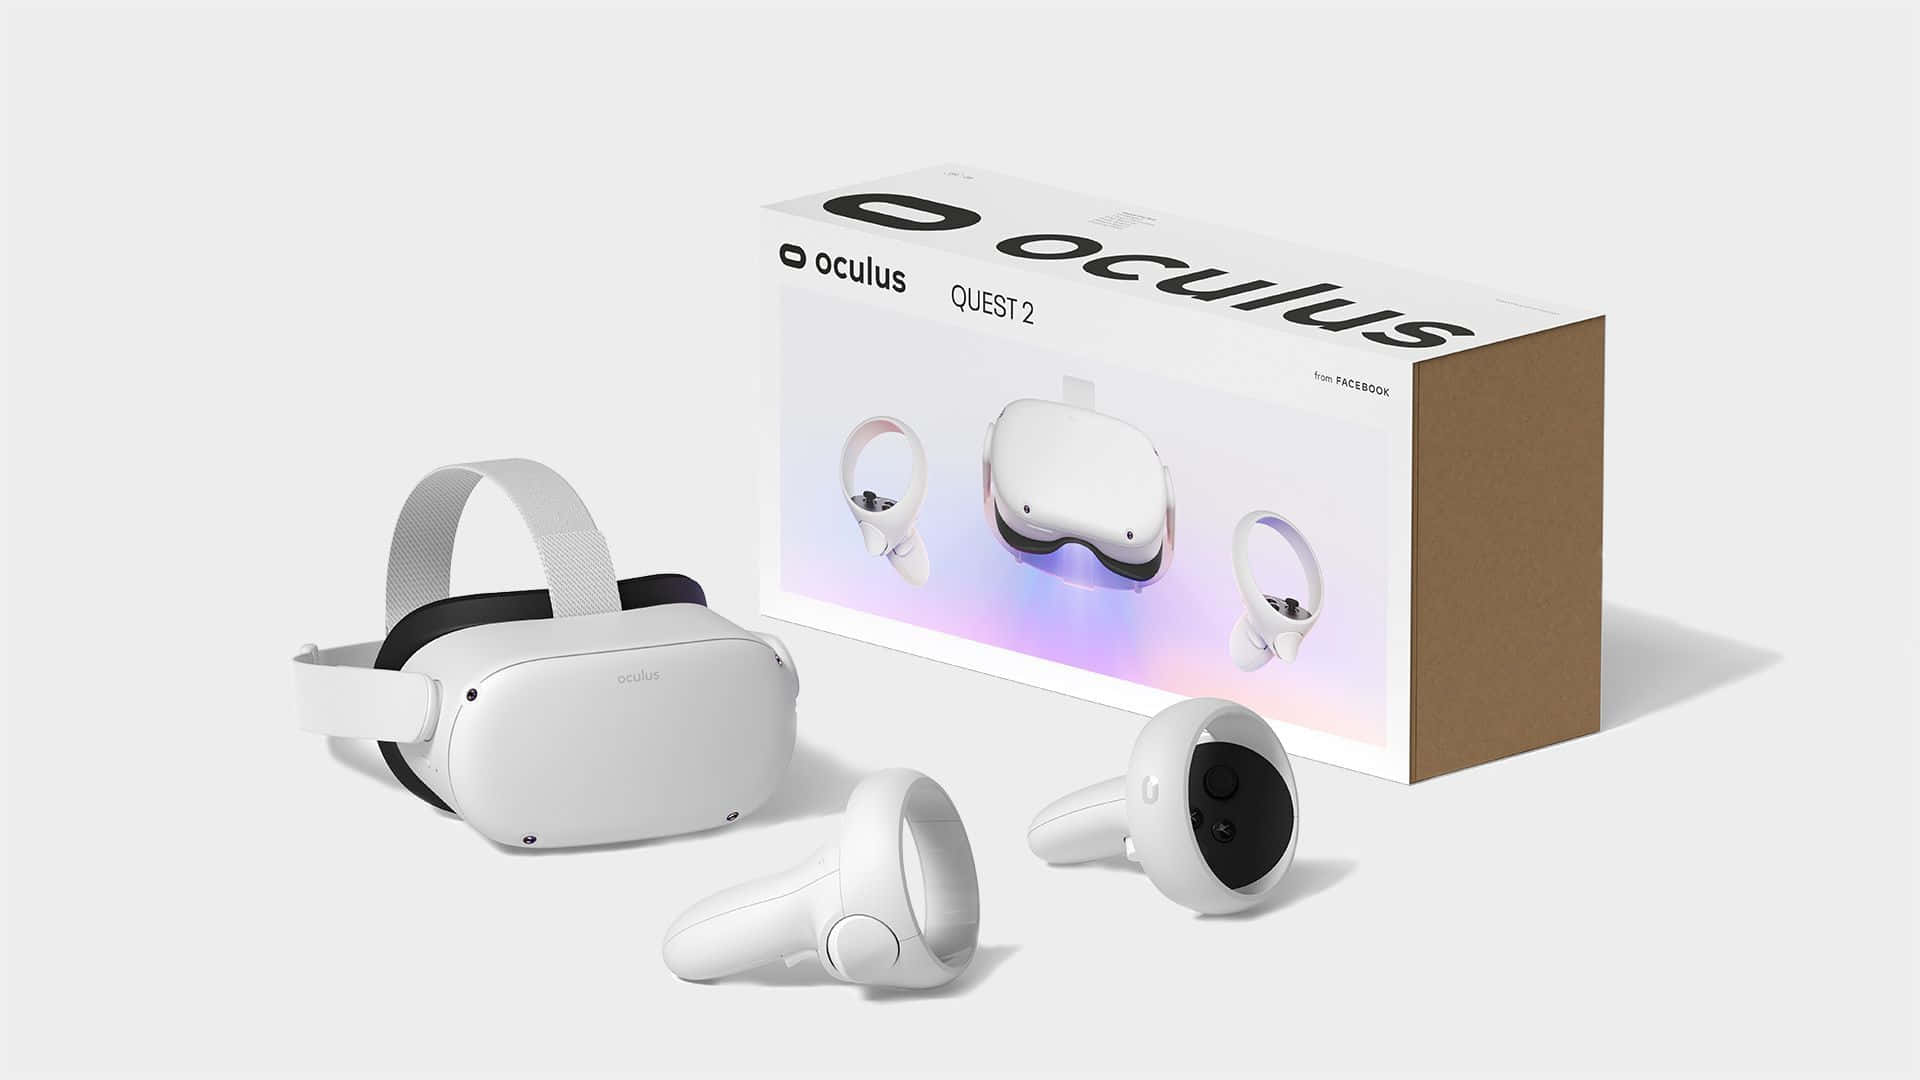 Unnuovo Livello Di Gioco In Realtà Virtuale Con Il Moderno Oculus Quest 2